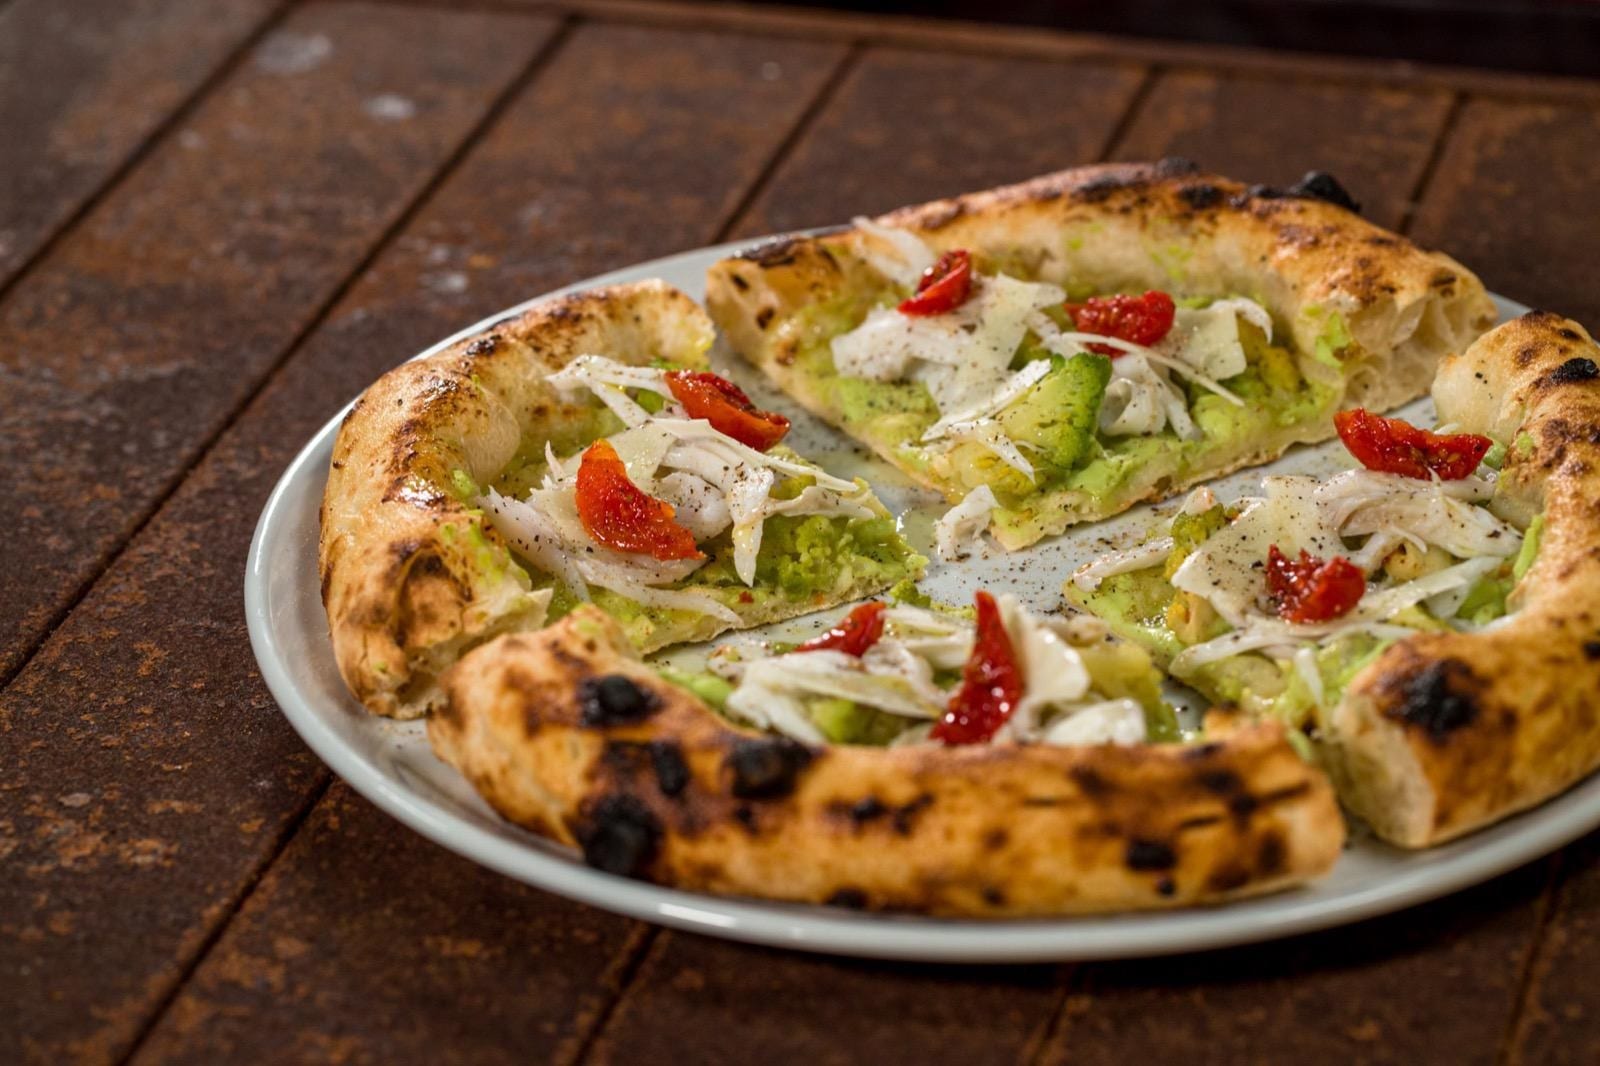 Pizza Tonda Minestra di broccoli e arzilla con crema di broccolo, arzilla e pomodorini semidry. Pezzetta birra del Borgo